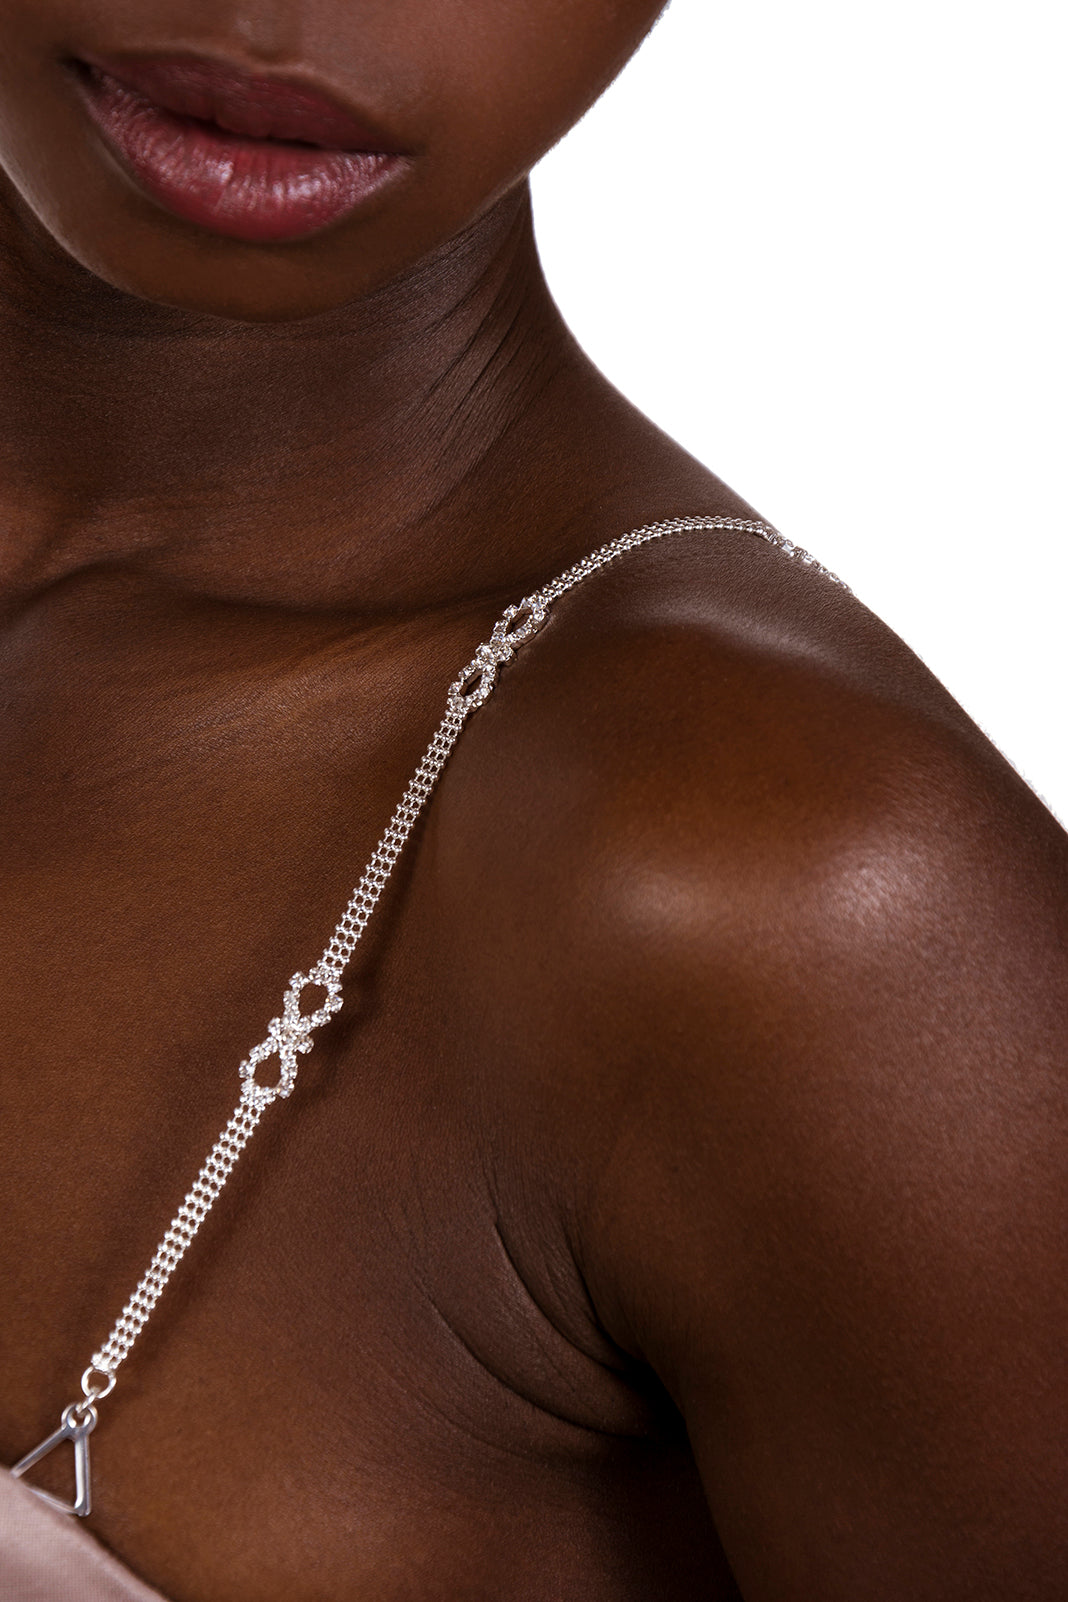 silver bra straps on dark skin